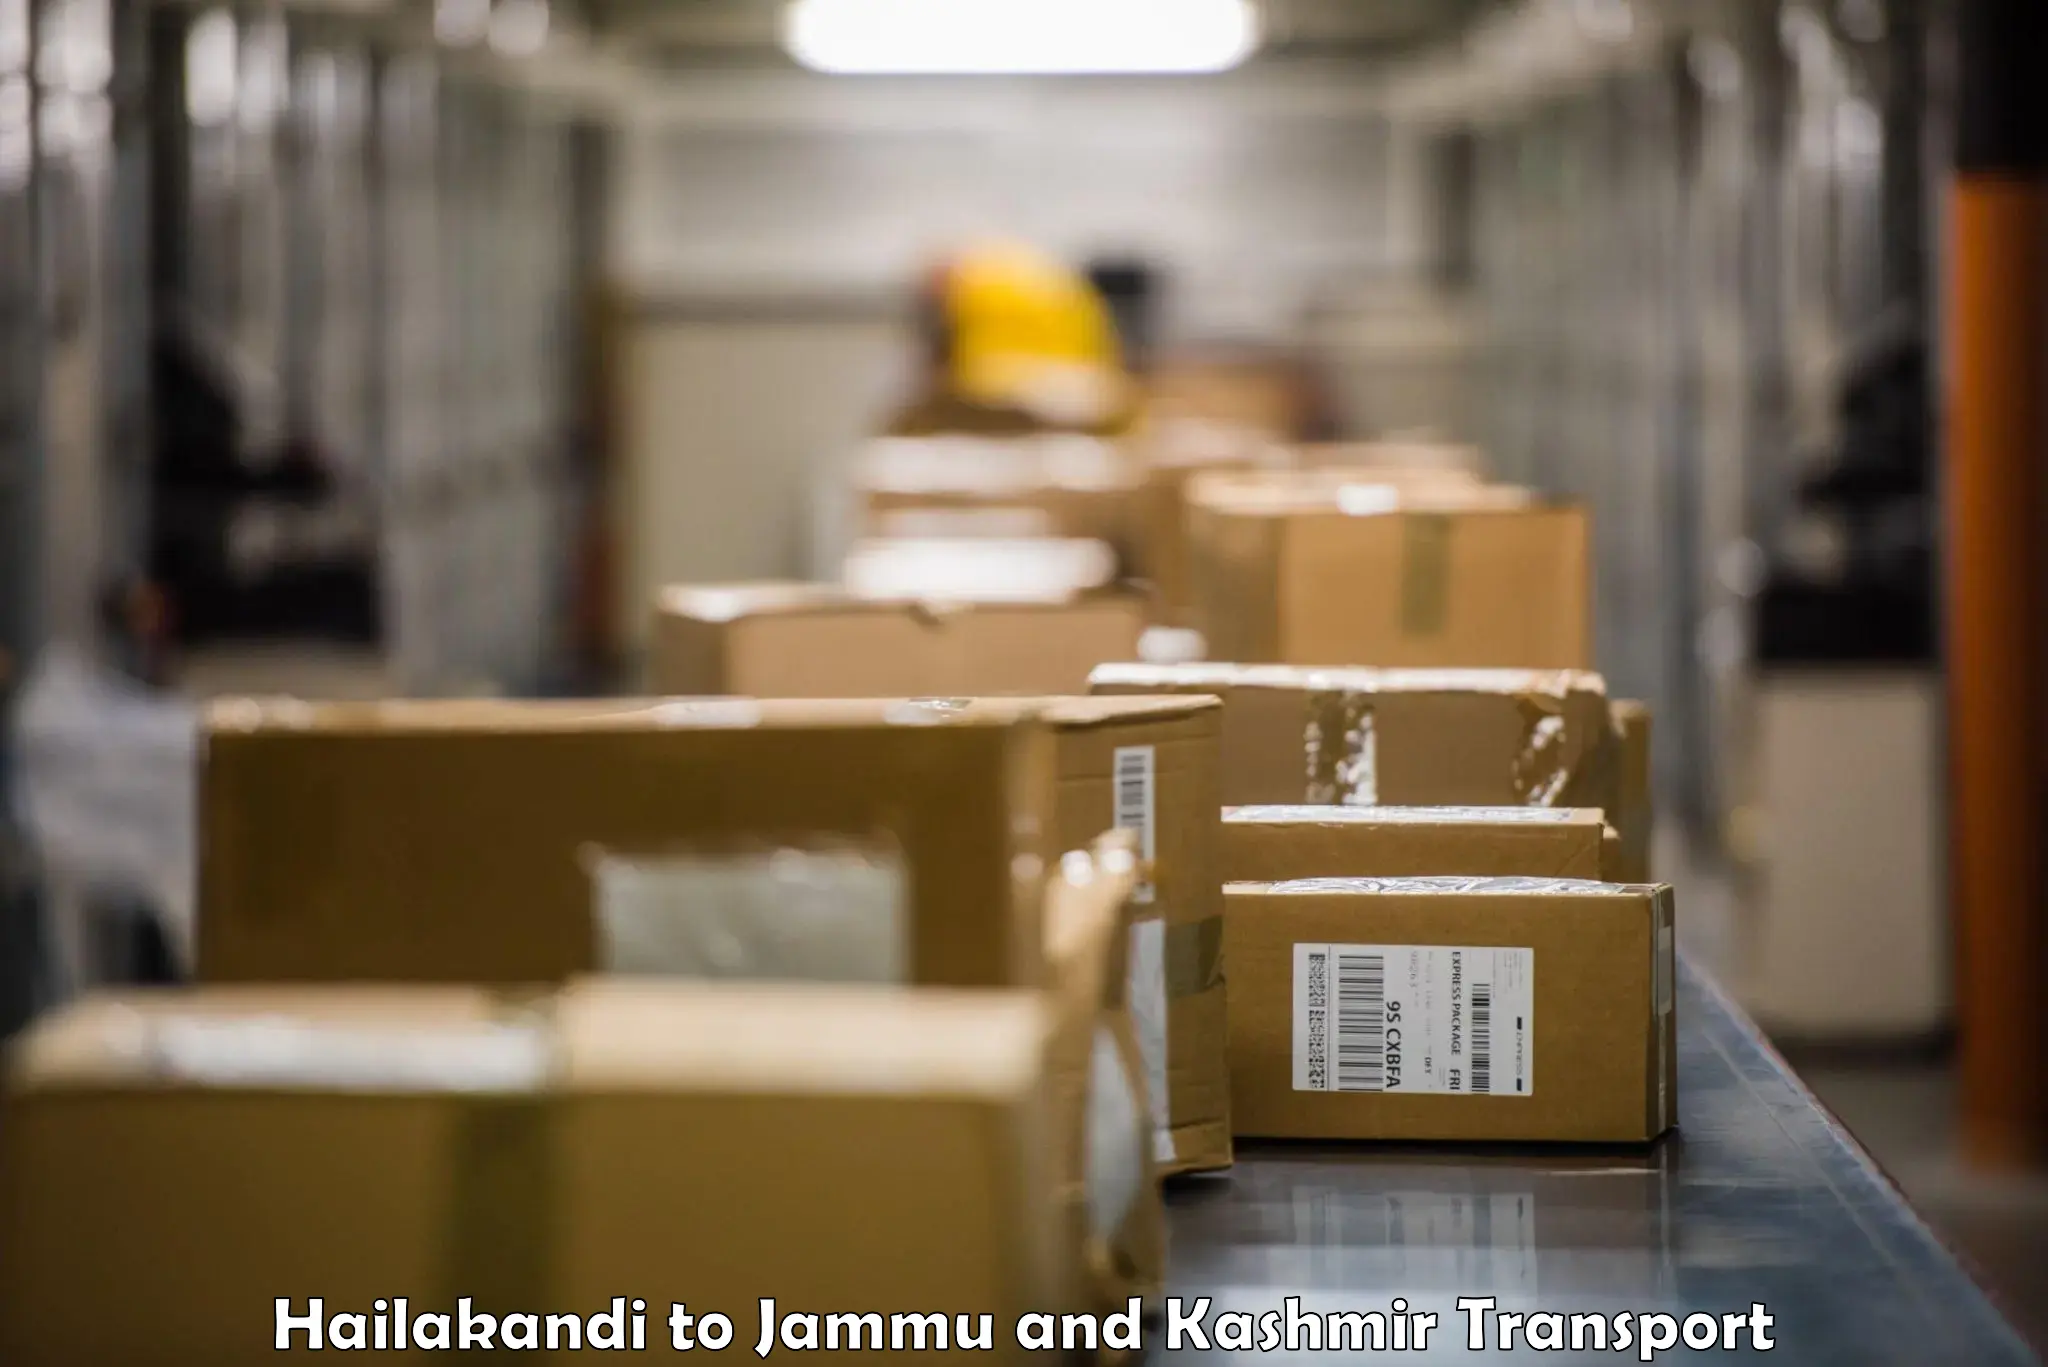 Cargo transportation services Hailakandi to Shopian